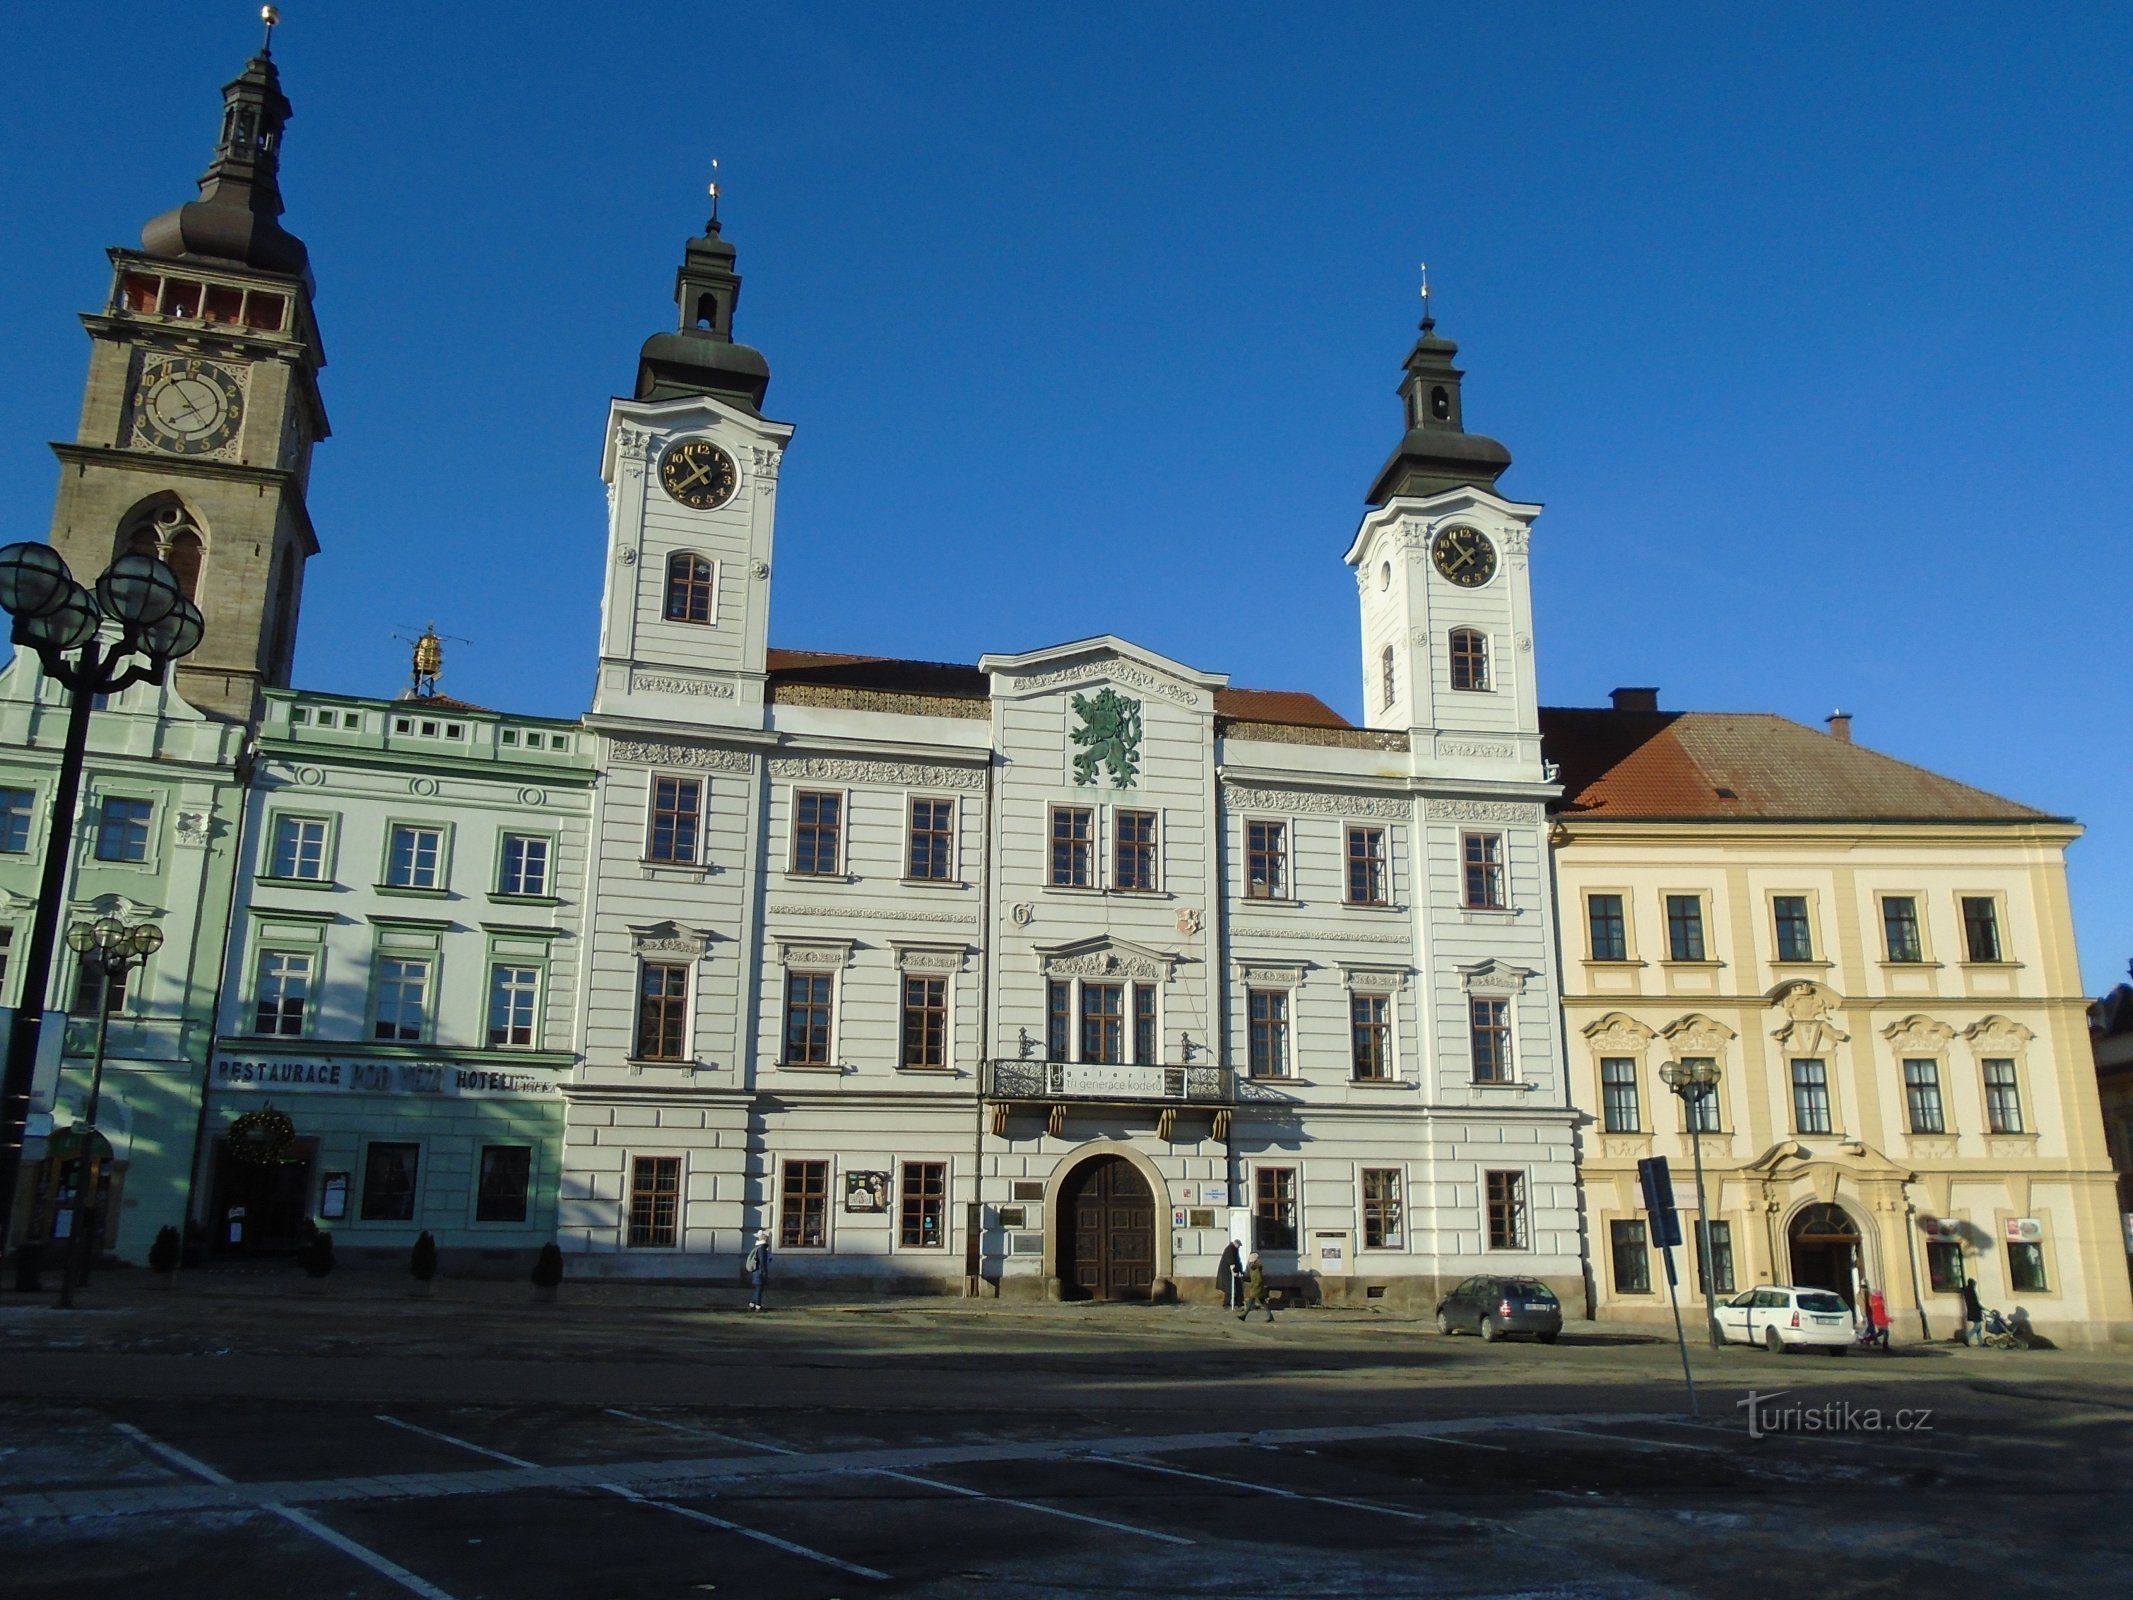 Velké náměstí No. 1 (Hradec Králové, 10.12.2017 de octubre de XNUMX)